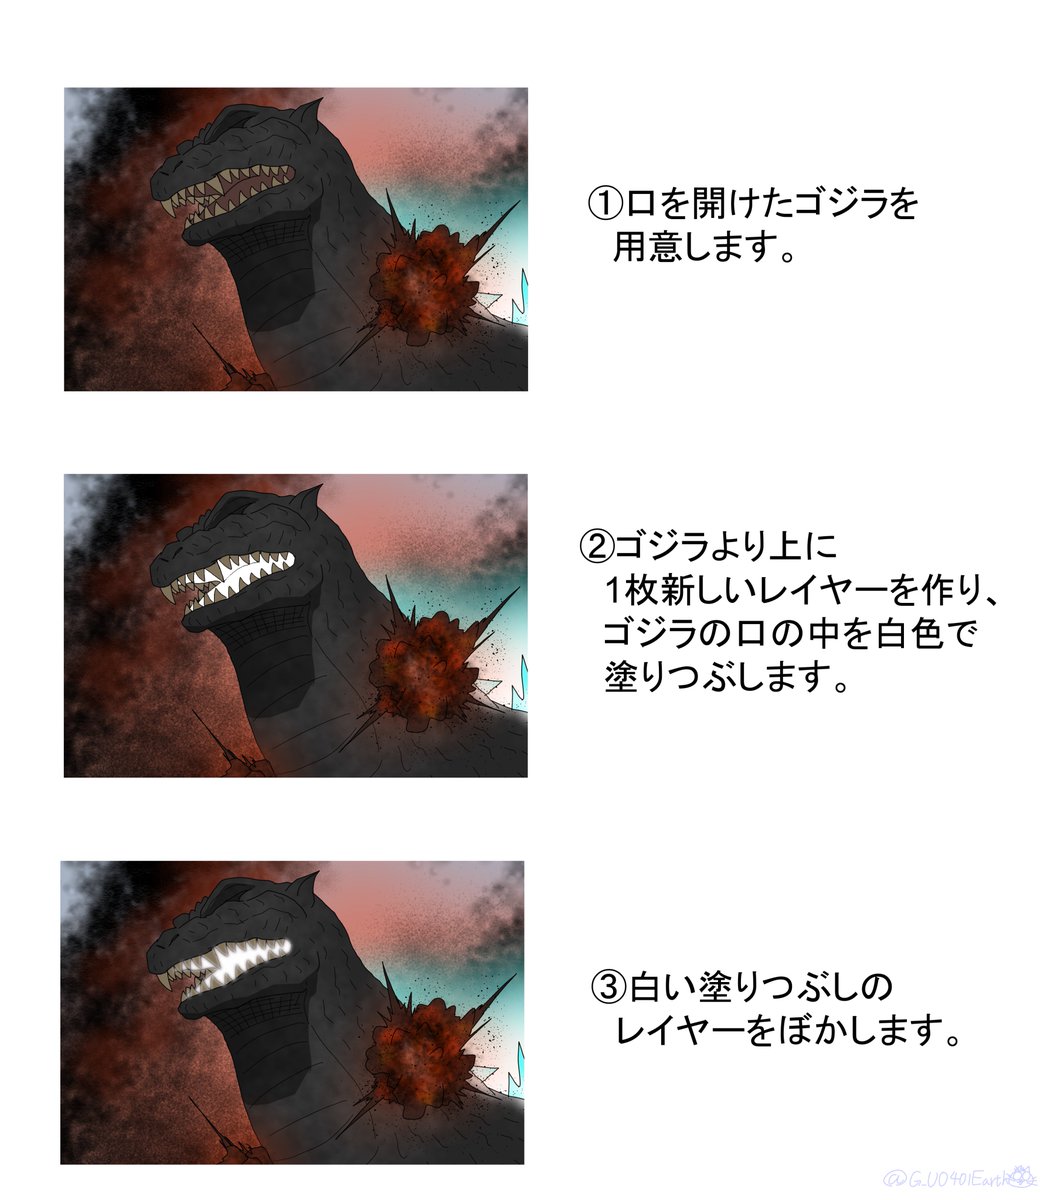 猫怪獣流
熱線発射直前のゴジラの口の発光の描き方
#ゴジラ #Godzilla 